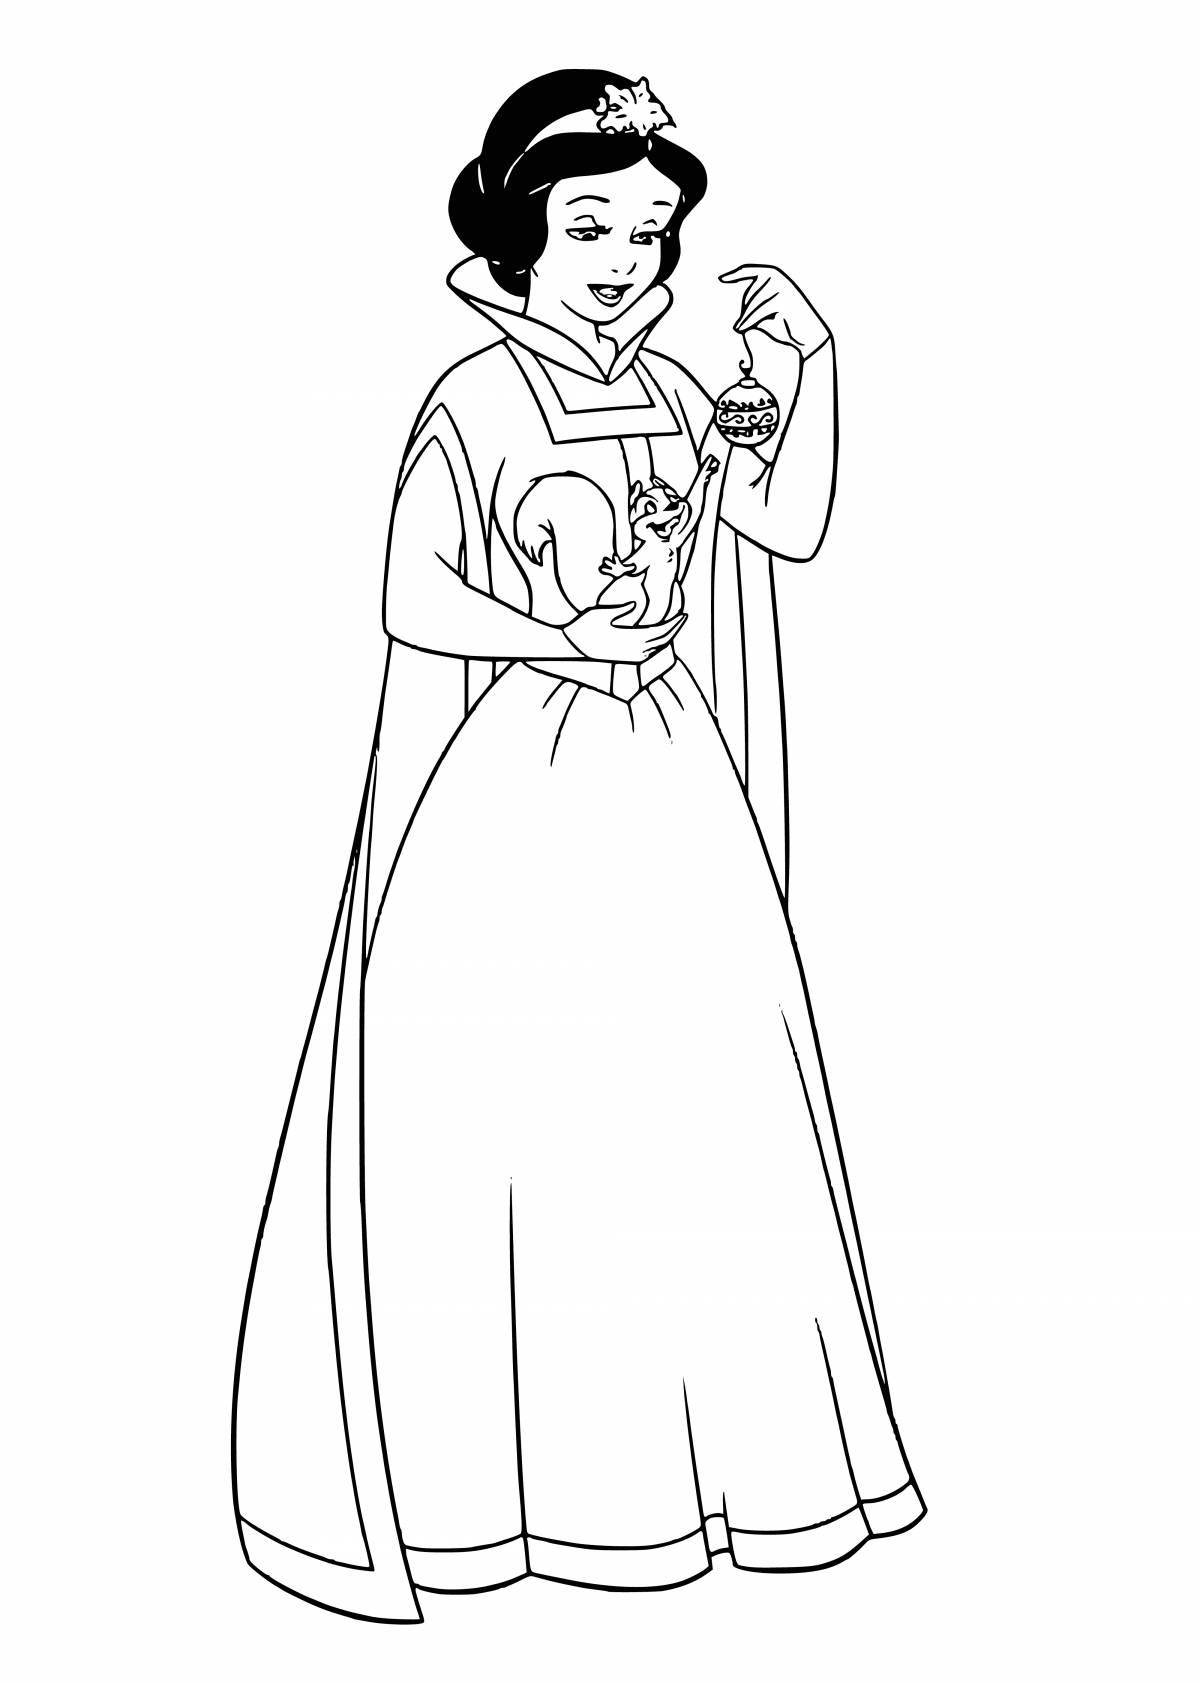 Coloring page wild snow white princess